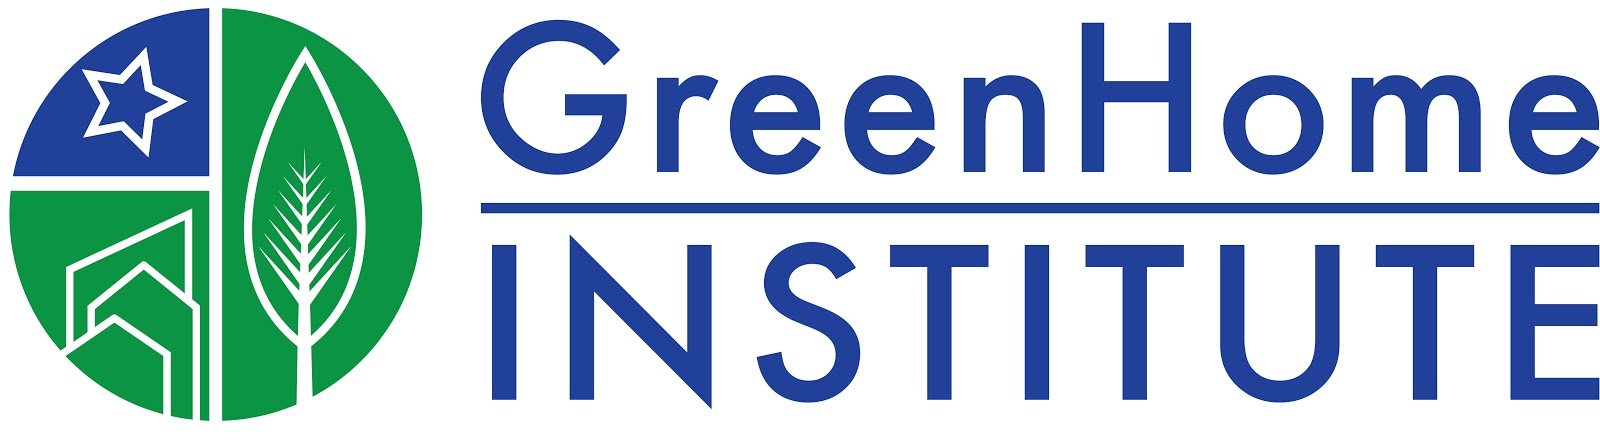 GreenHome Institute Logo.jpg